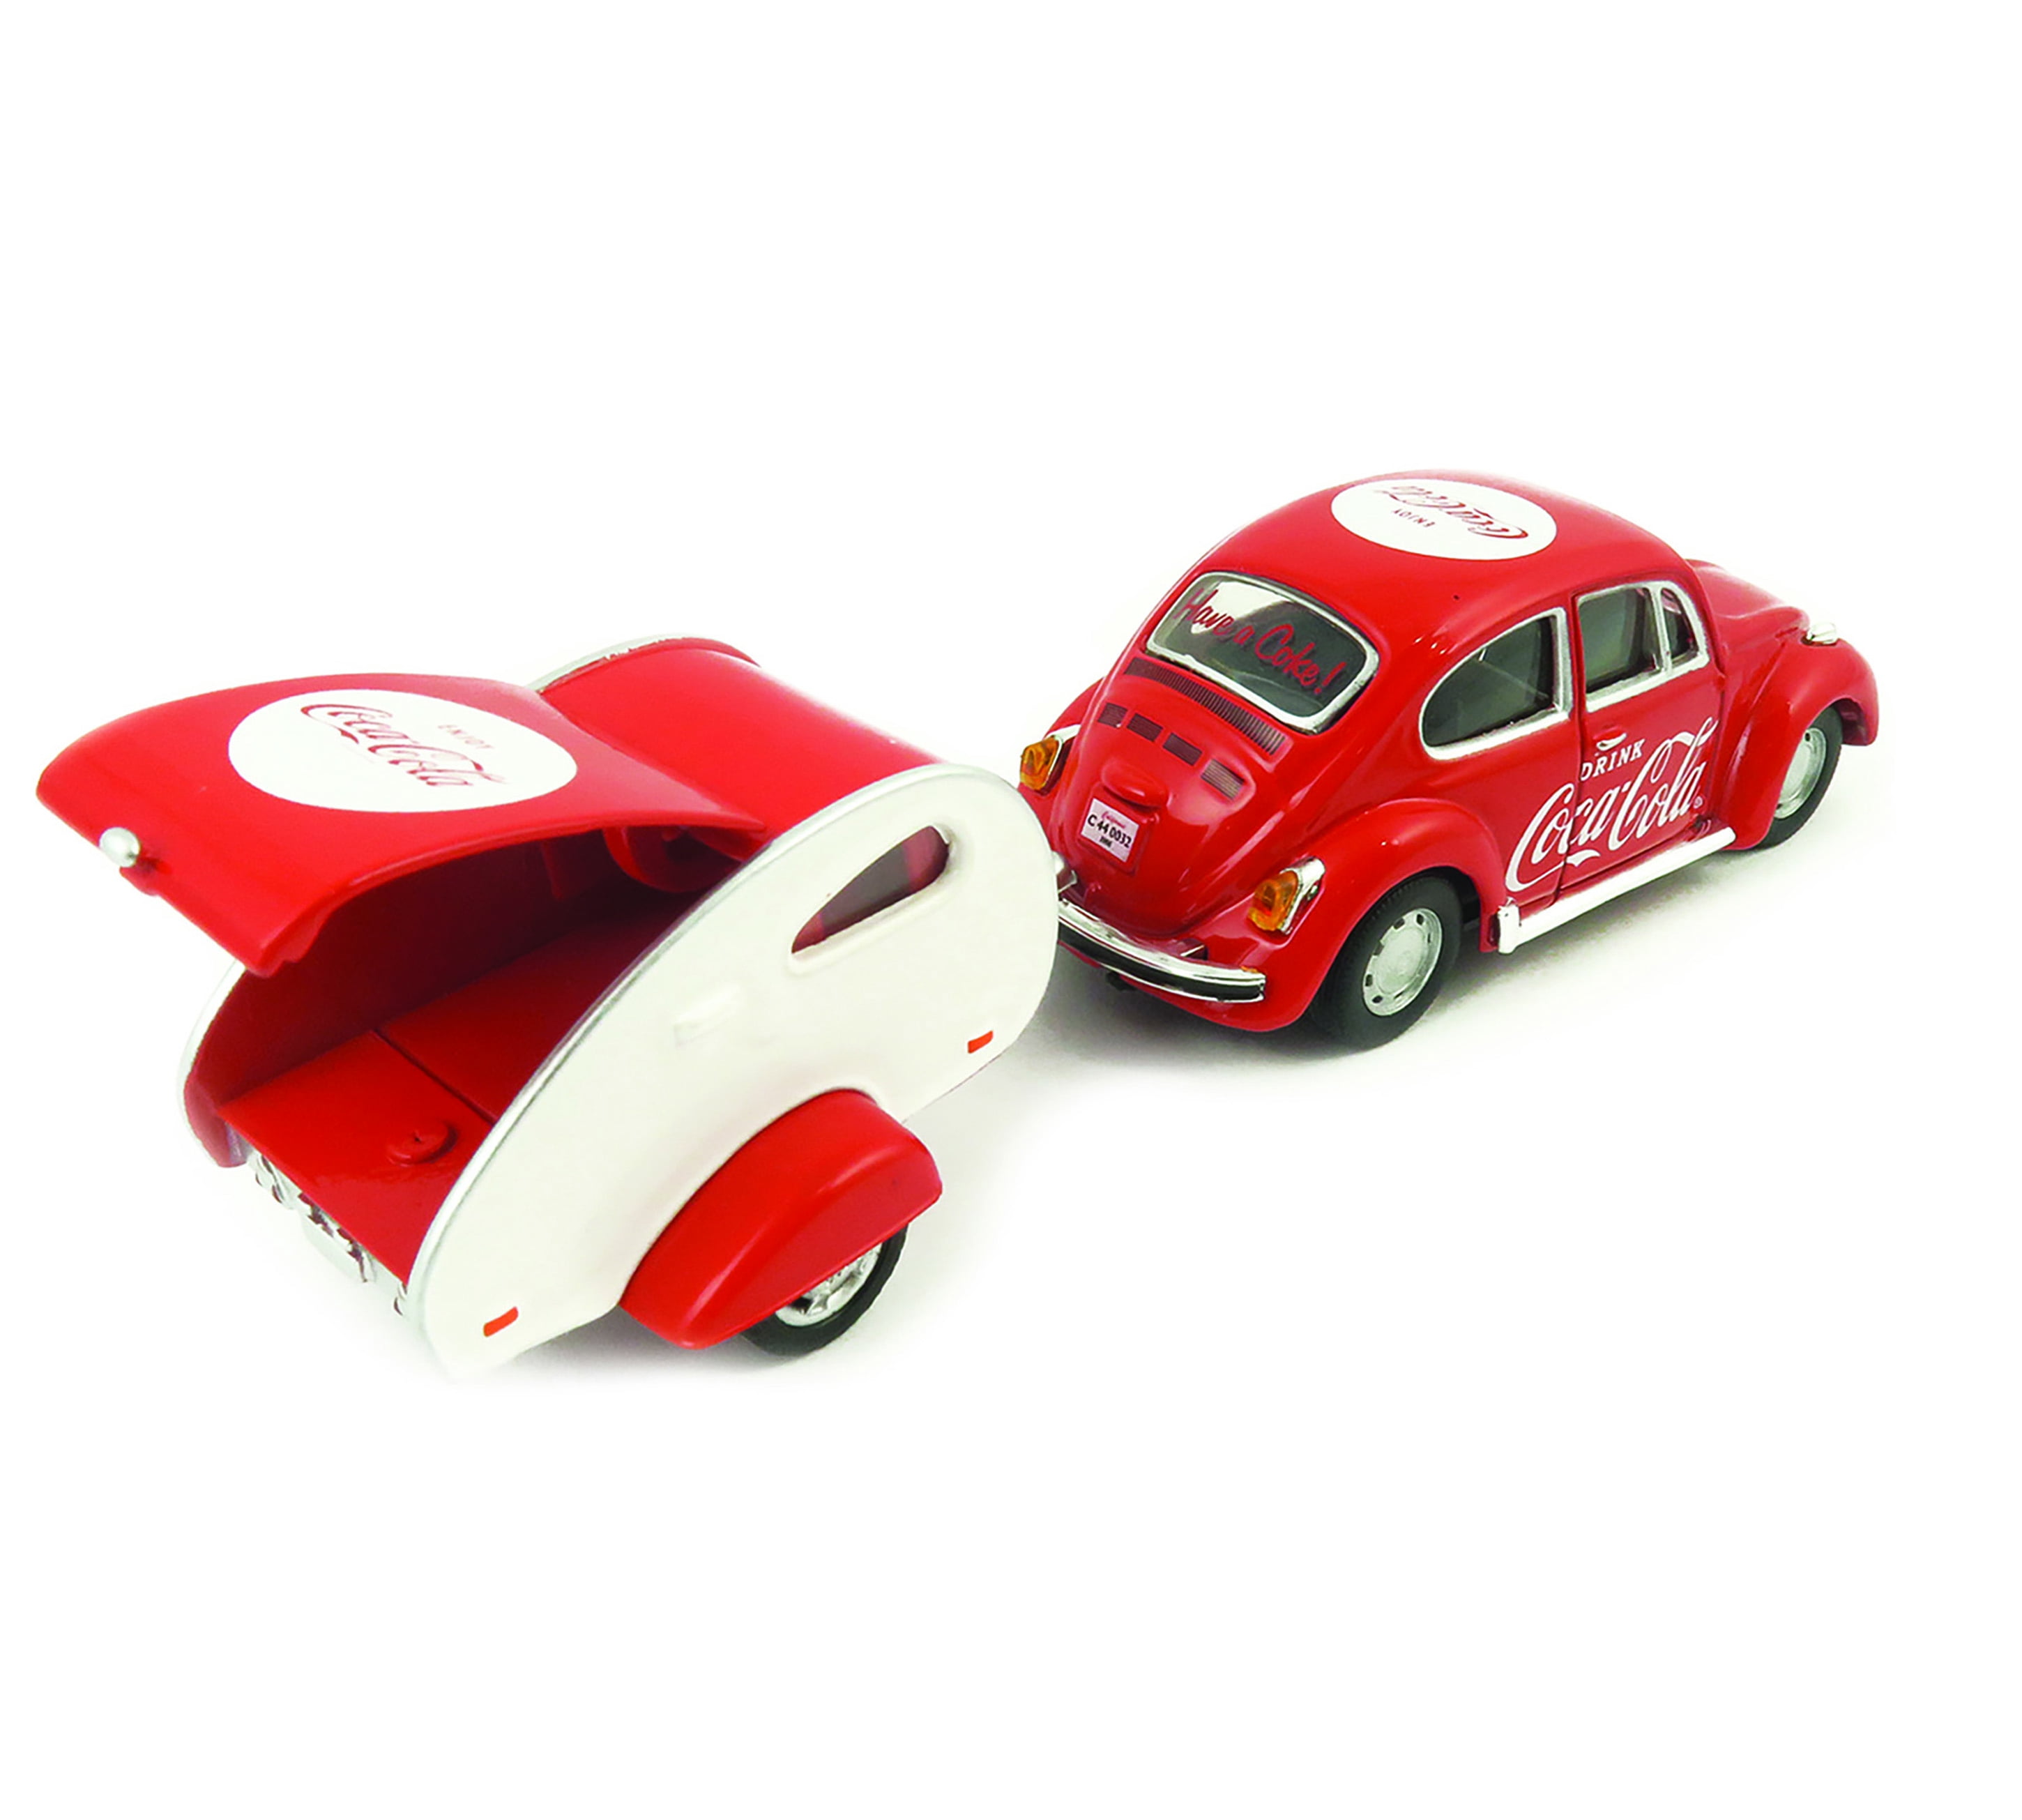 Volkswagen Beetle Bburago 1:43 Scale Diecast Toy Car 